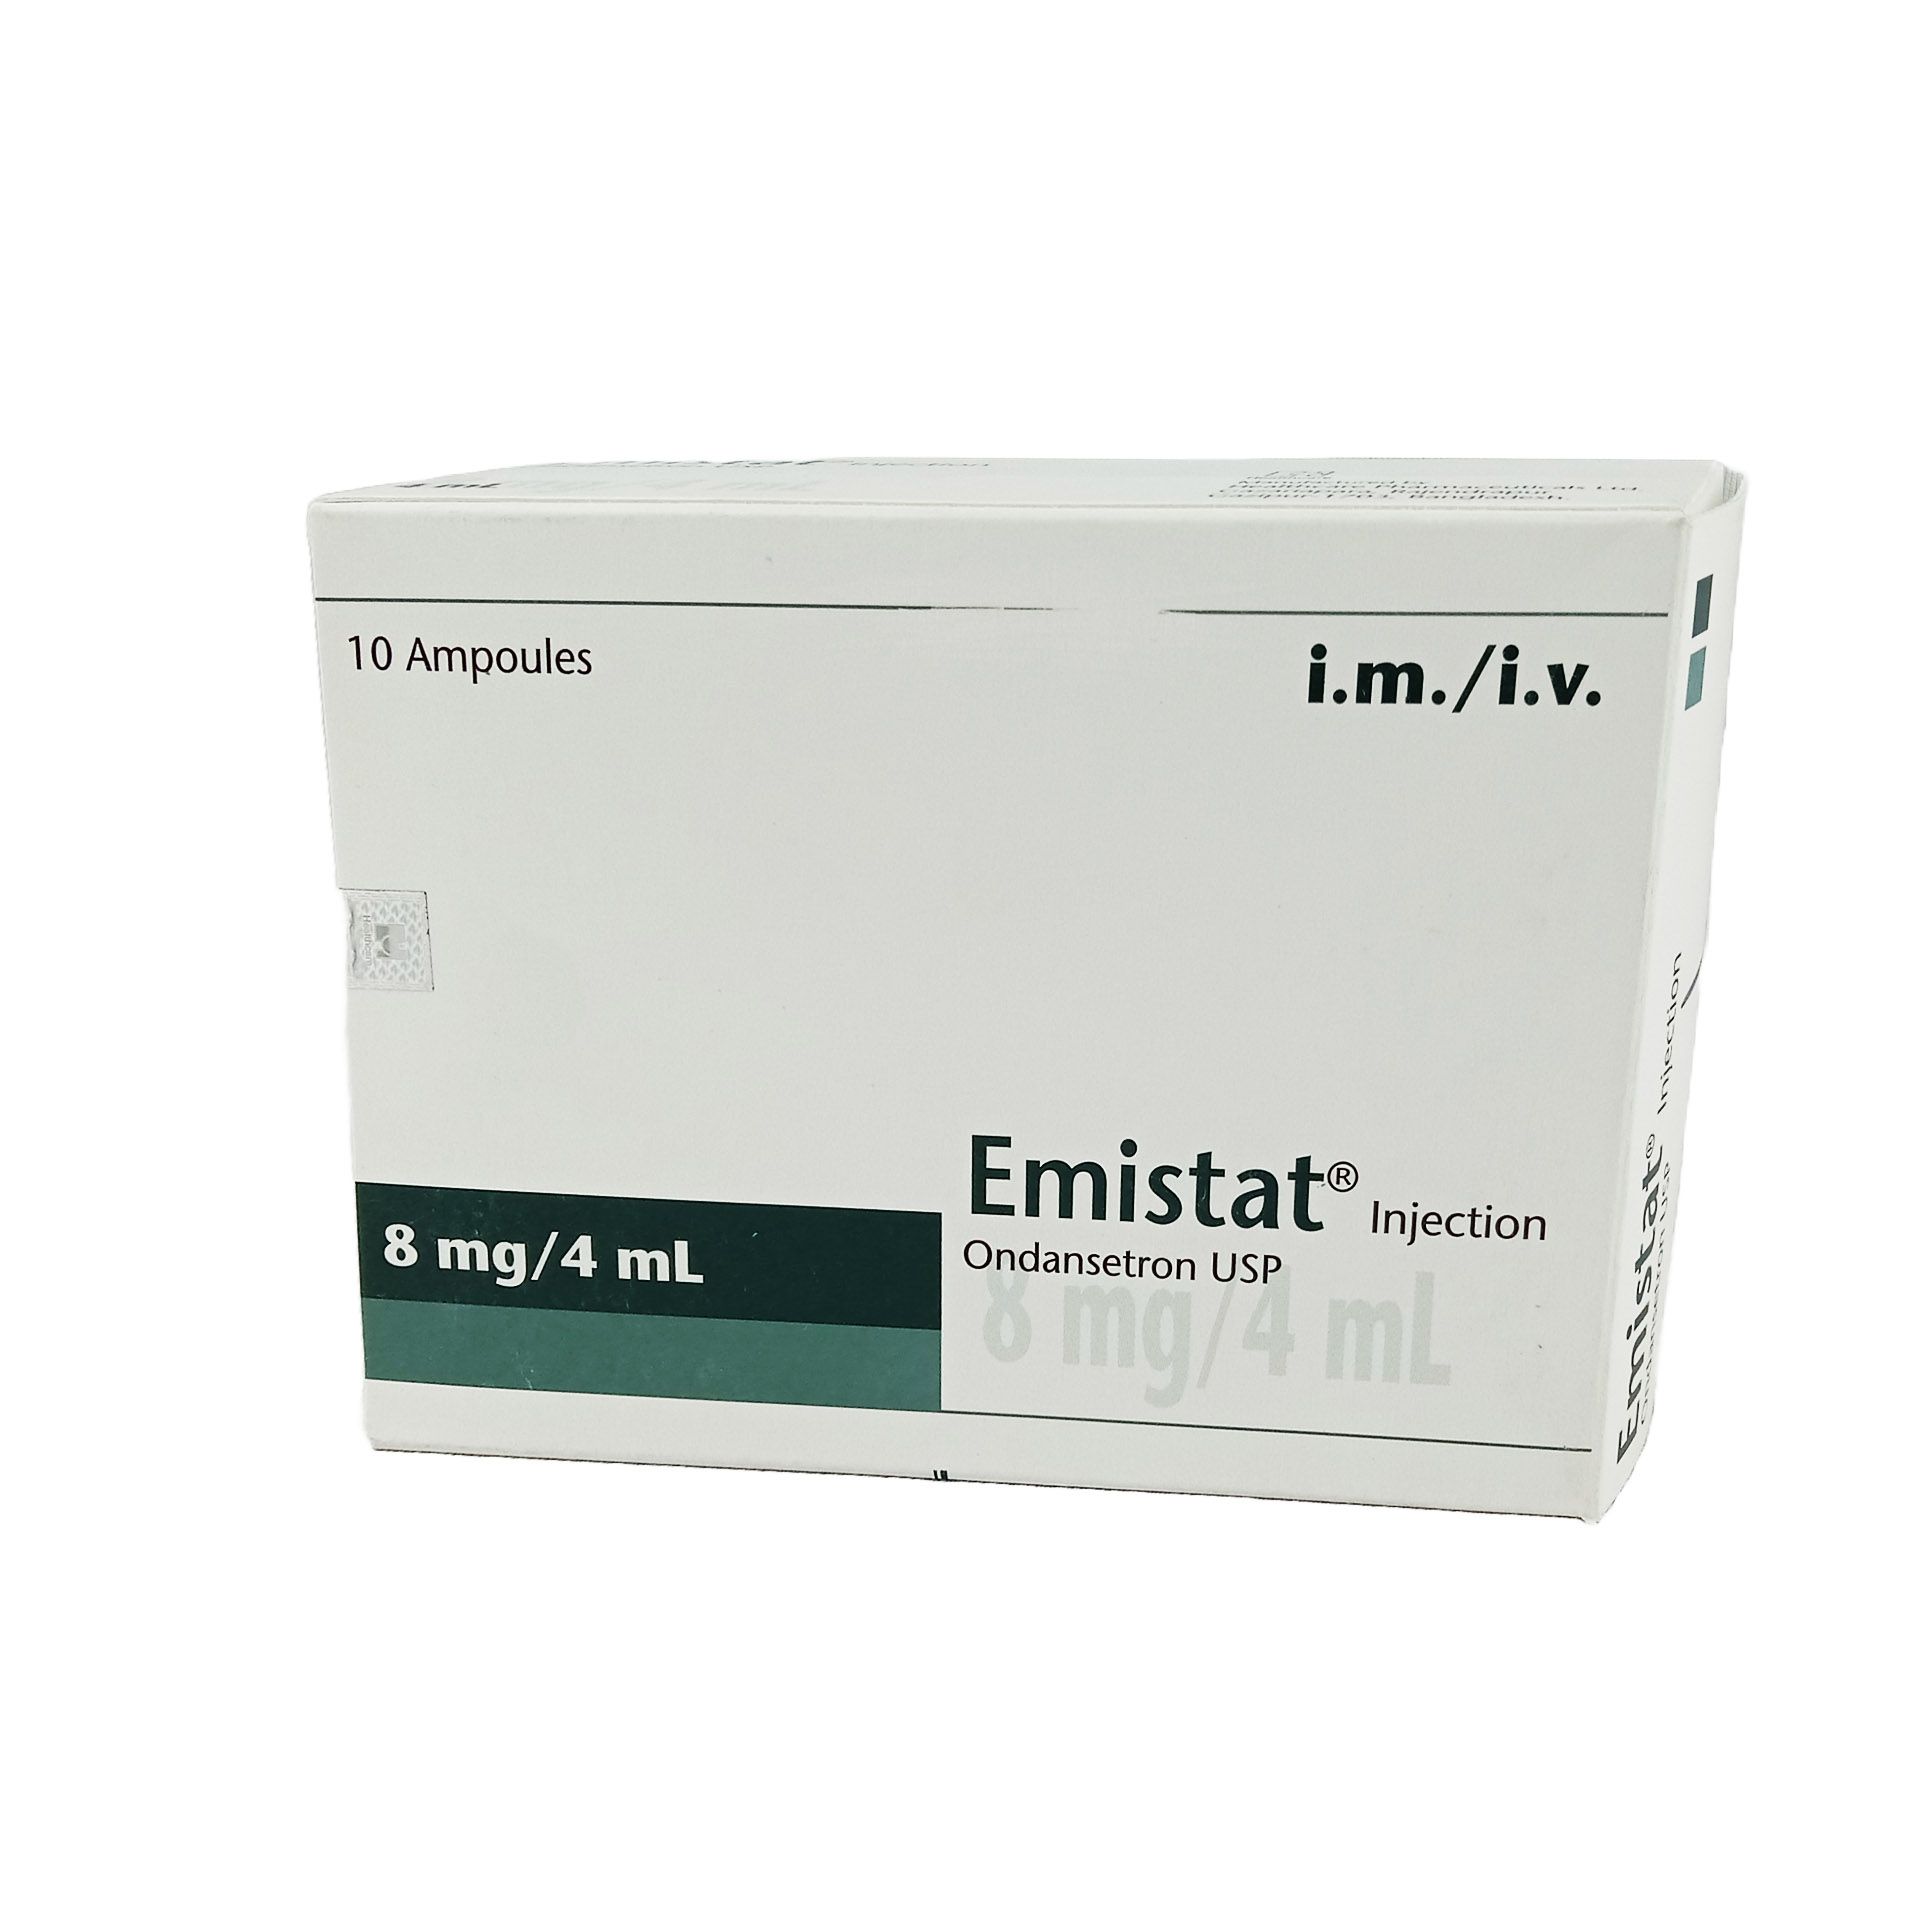 Emistat 8mg/4ml Injection